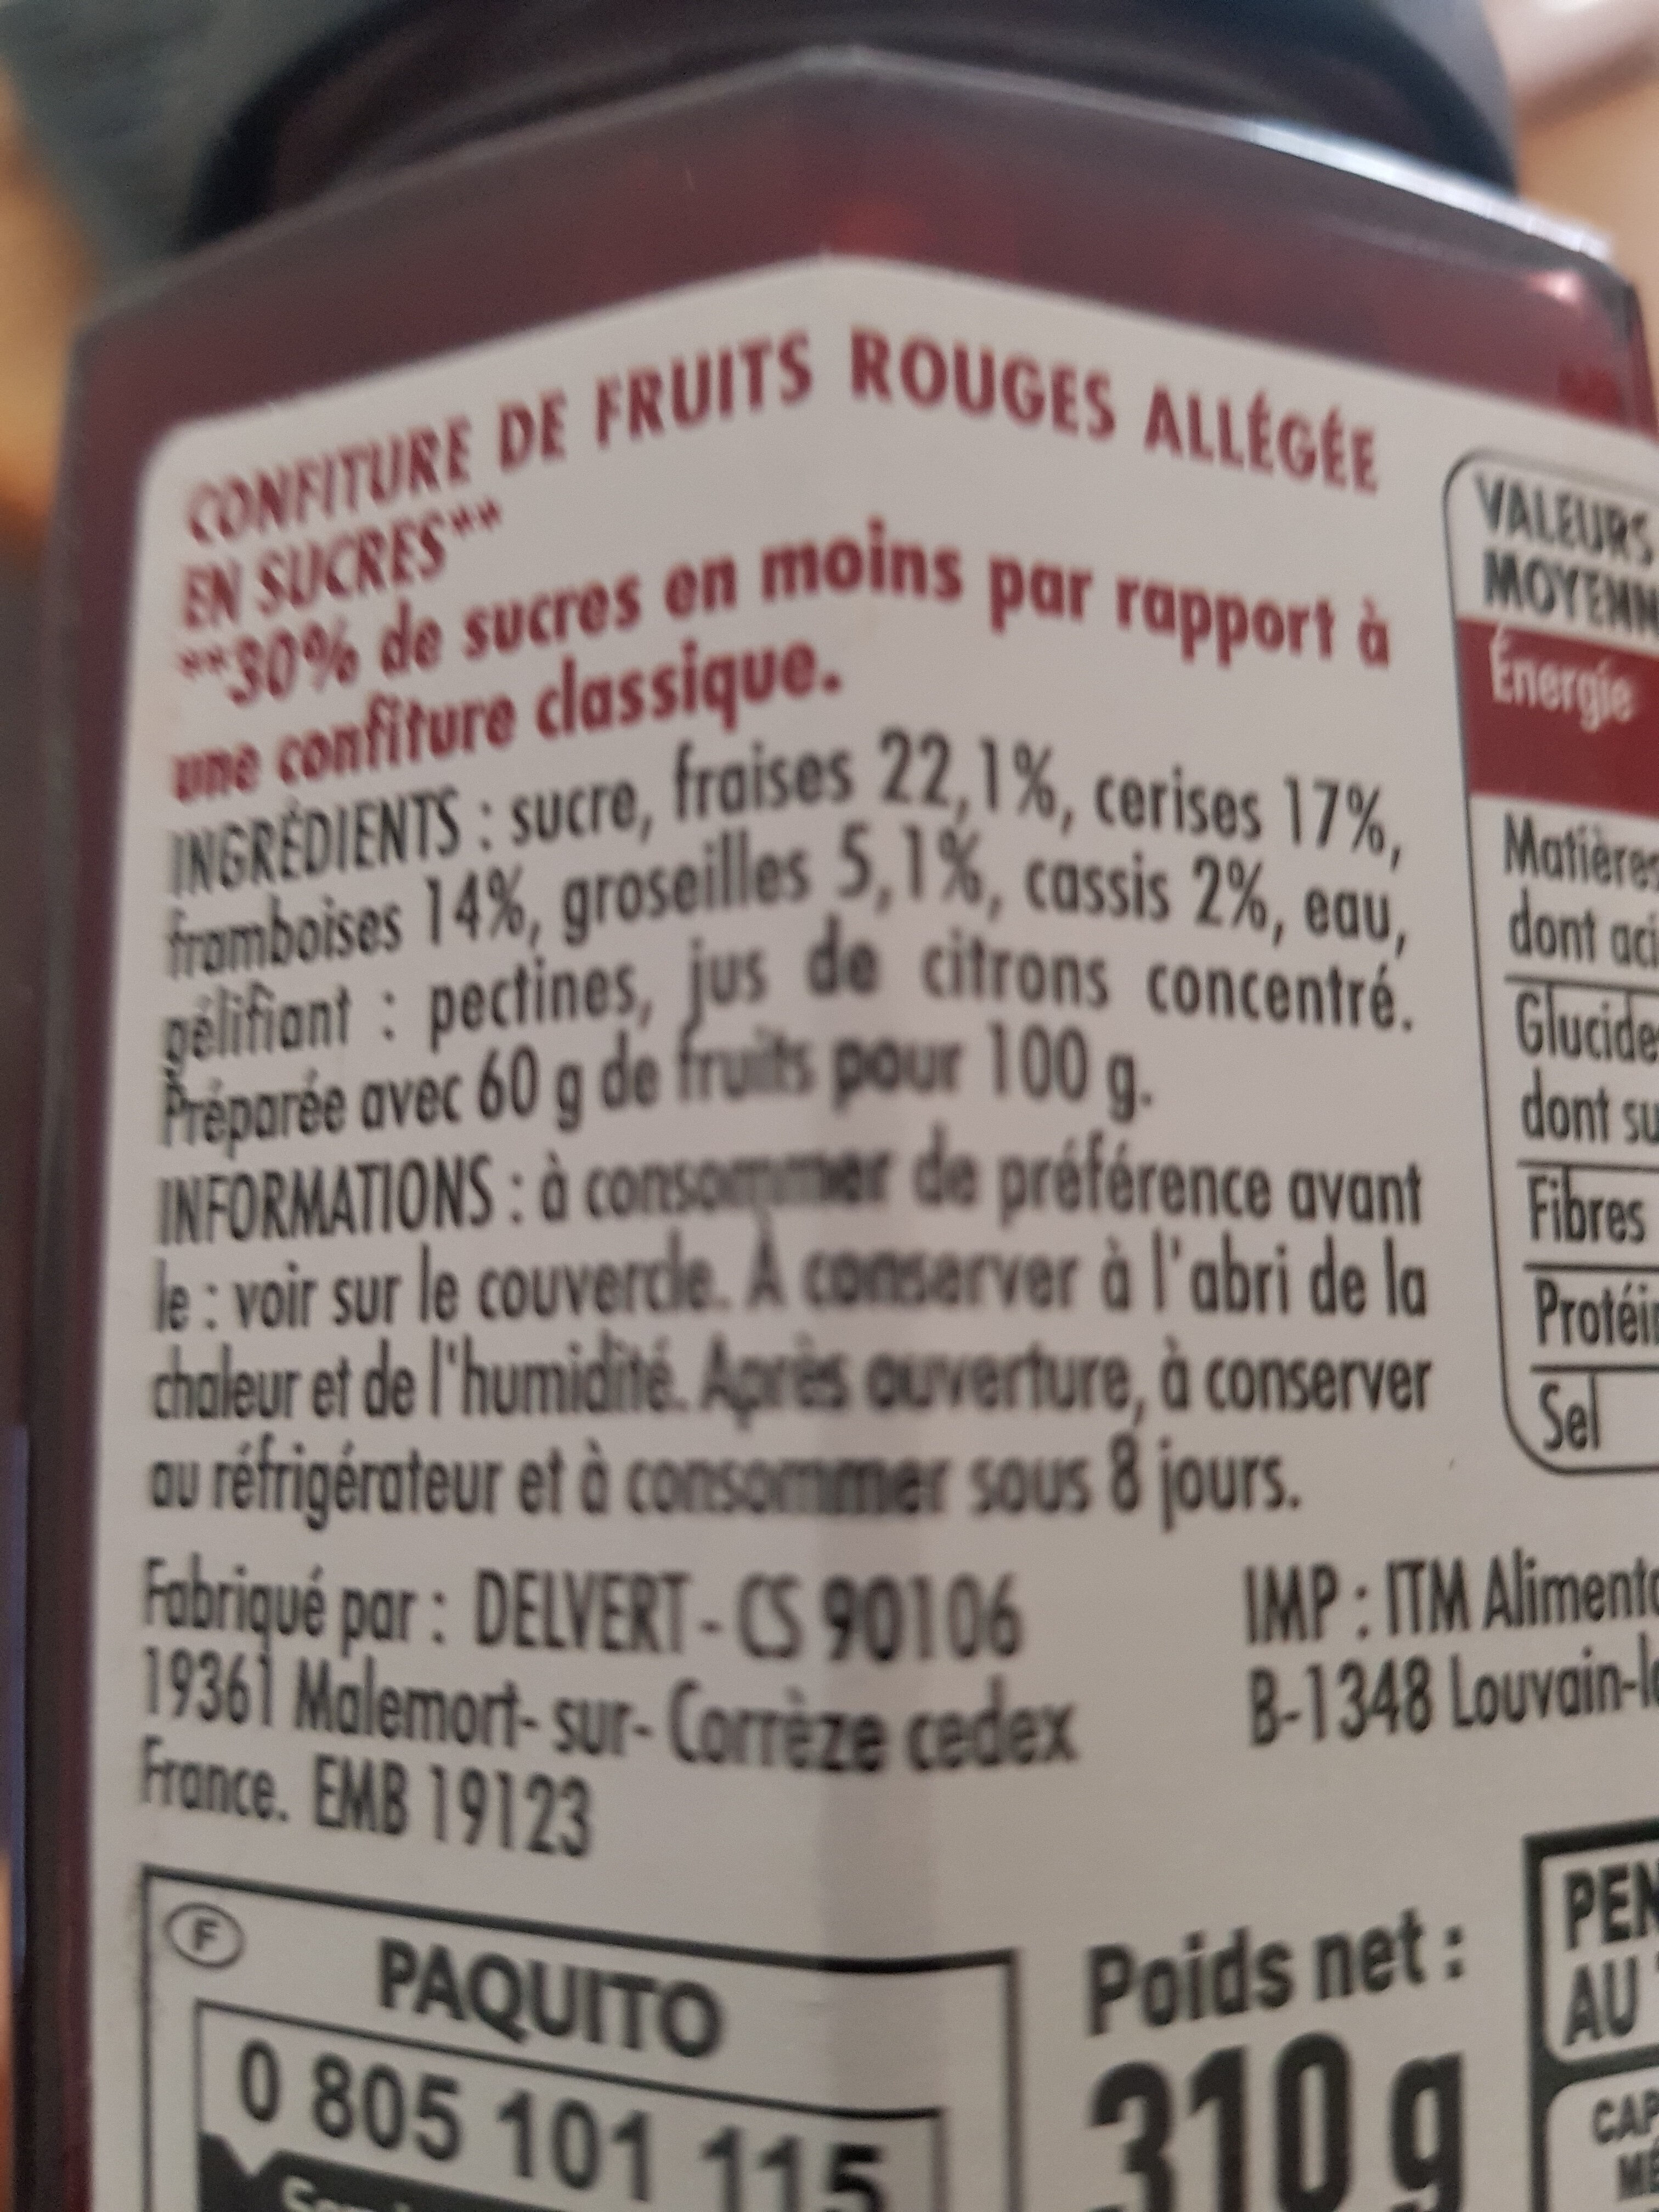 Confiture fruit rouge - Ingredients - fr